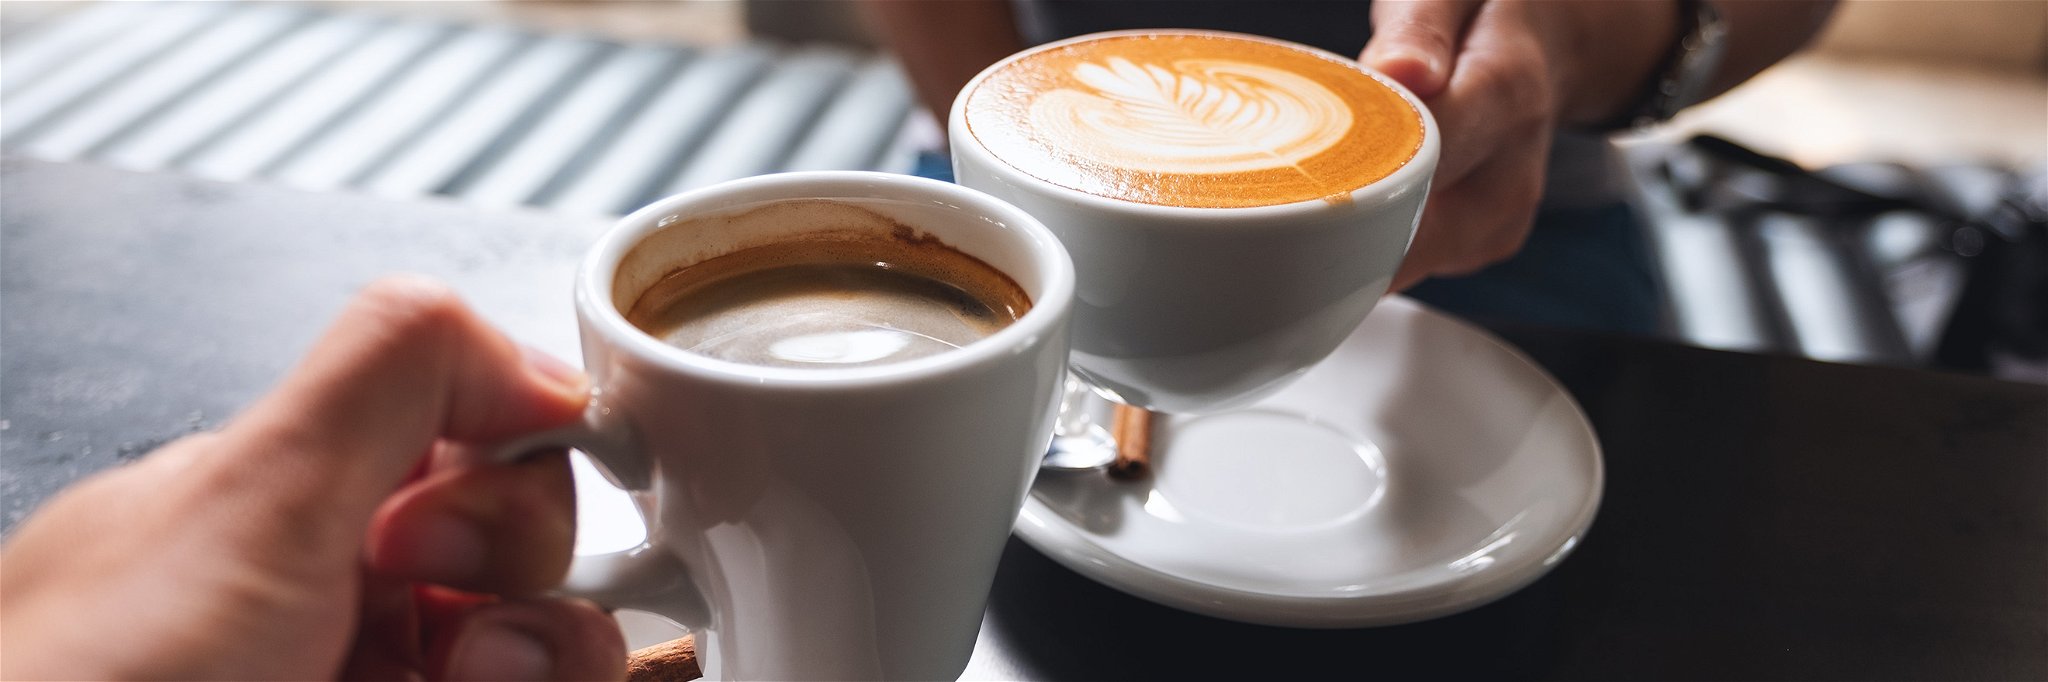 Rund 44 Prozent der Deutschen kaufen inzwischen ganze Kaffeebohnen statt Pulver-Kaffee.